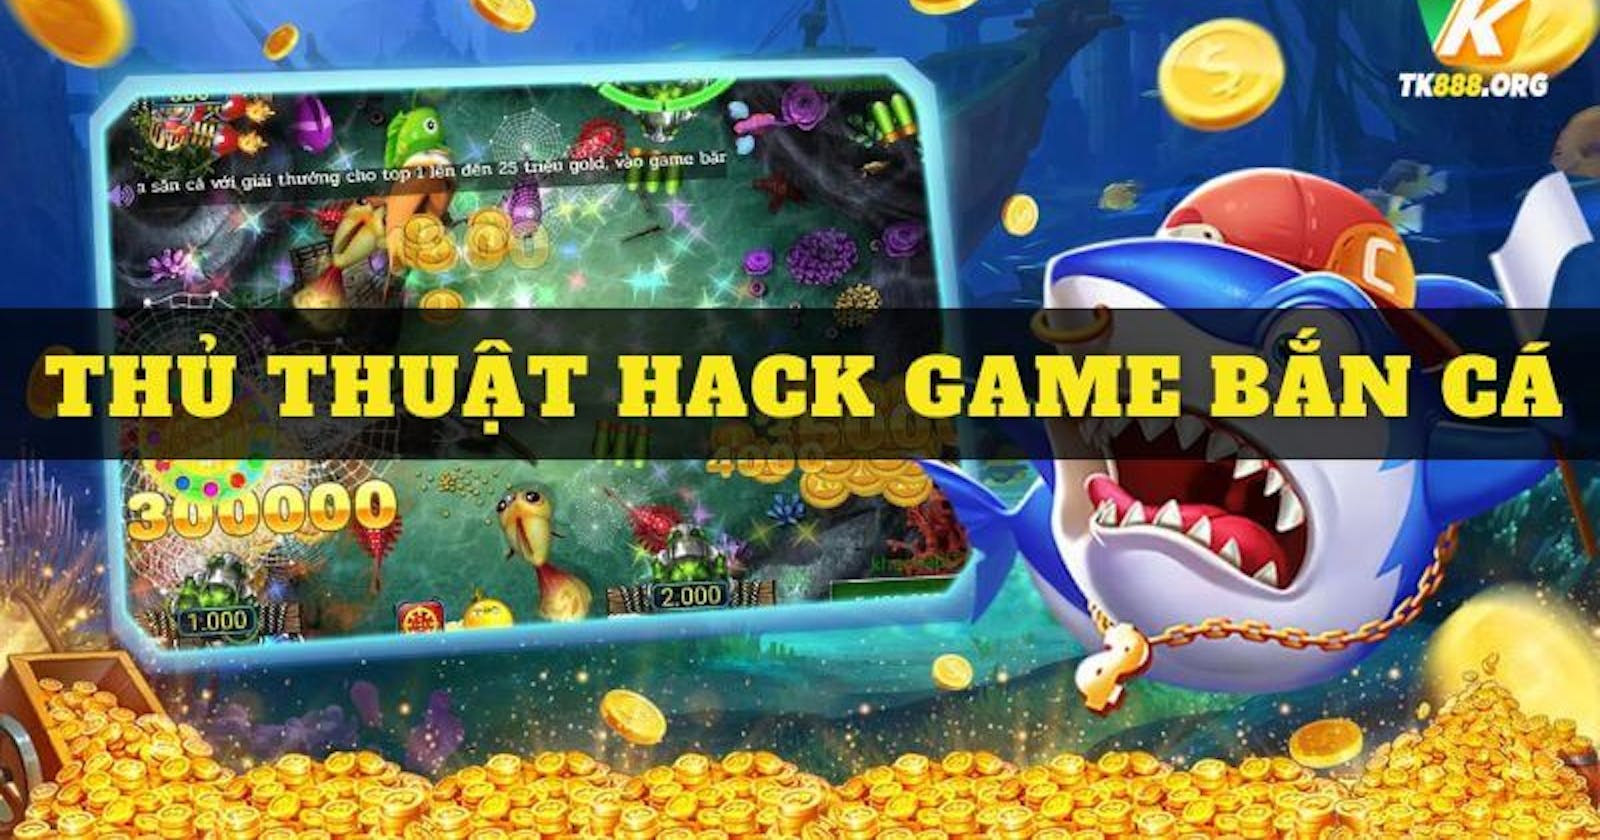 Cách hack game bắn cá bằng thủ thuật